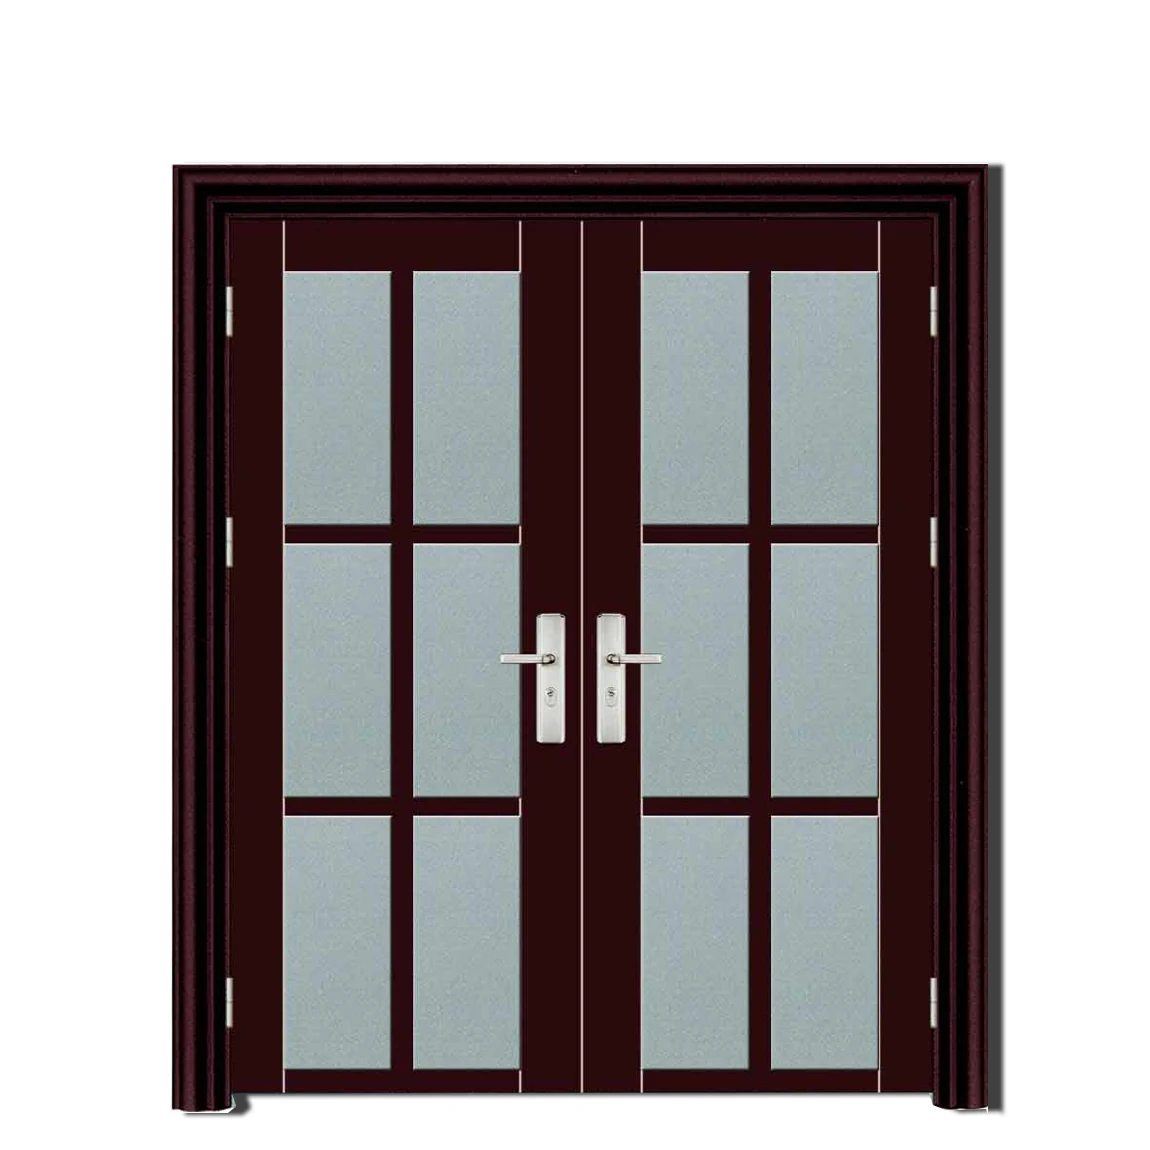 aluminum interior door/ channel for window frame parts cost